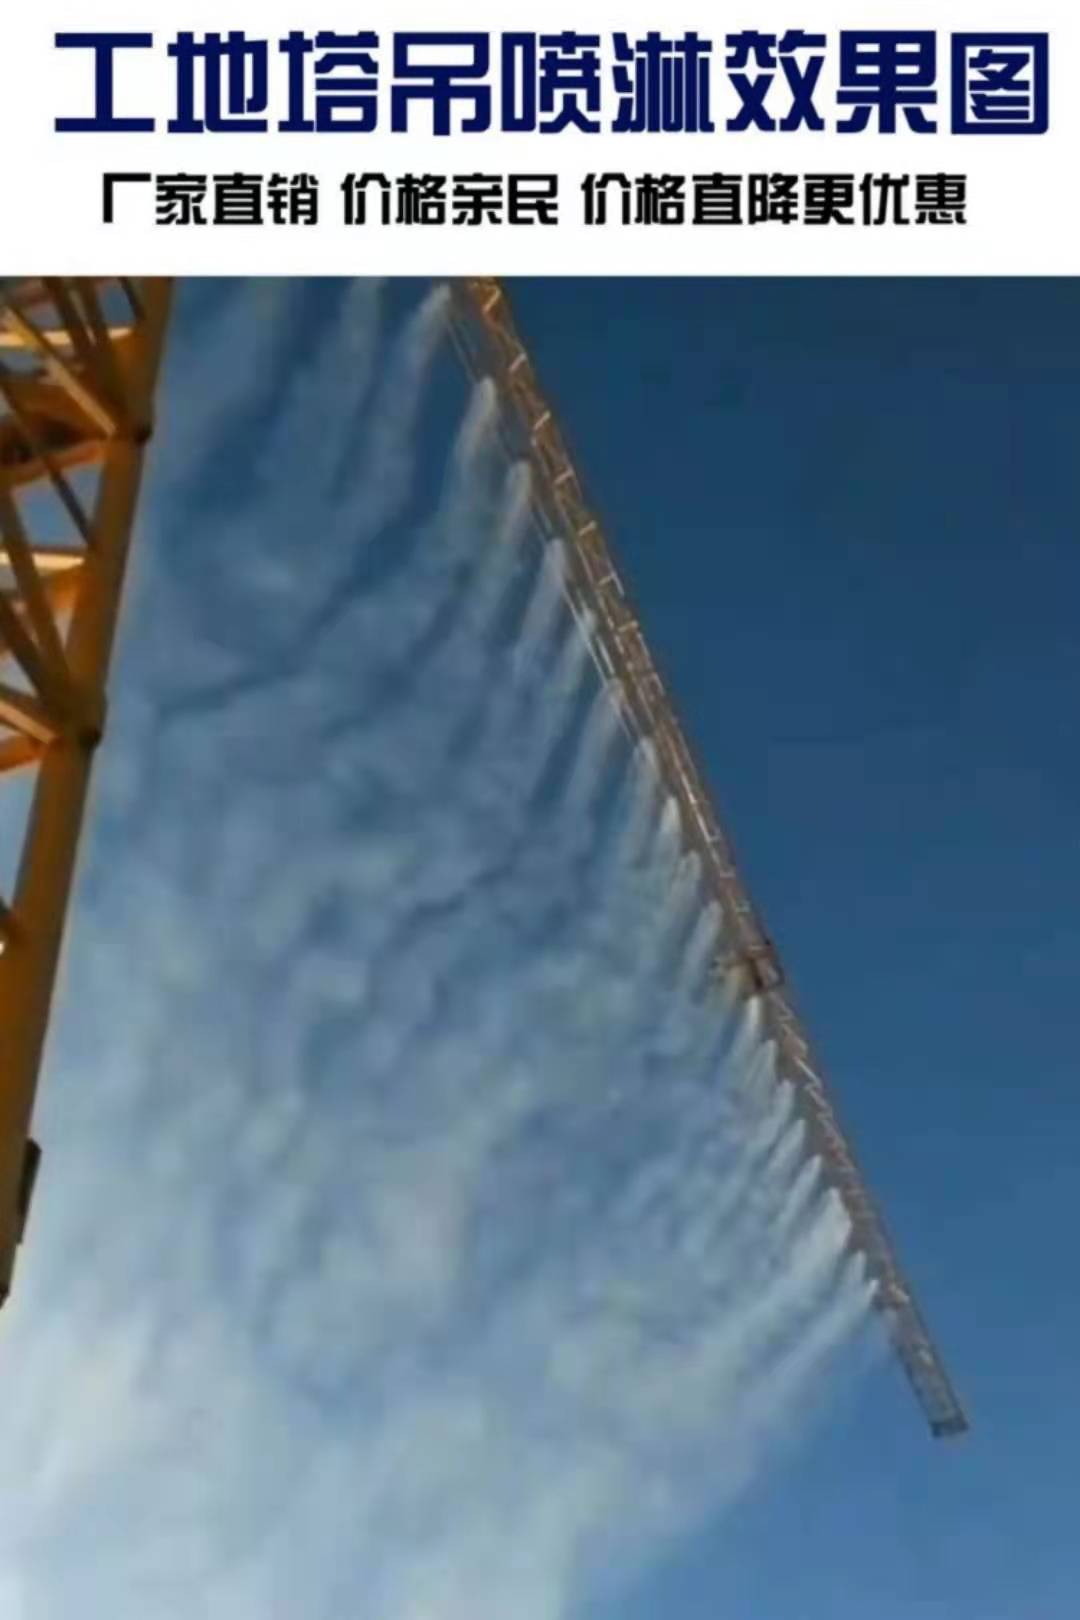 万元建筑工地塔吊喷雾系统塔机喷淋除尘系统塔机除尘减霾喷淋设备